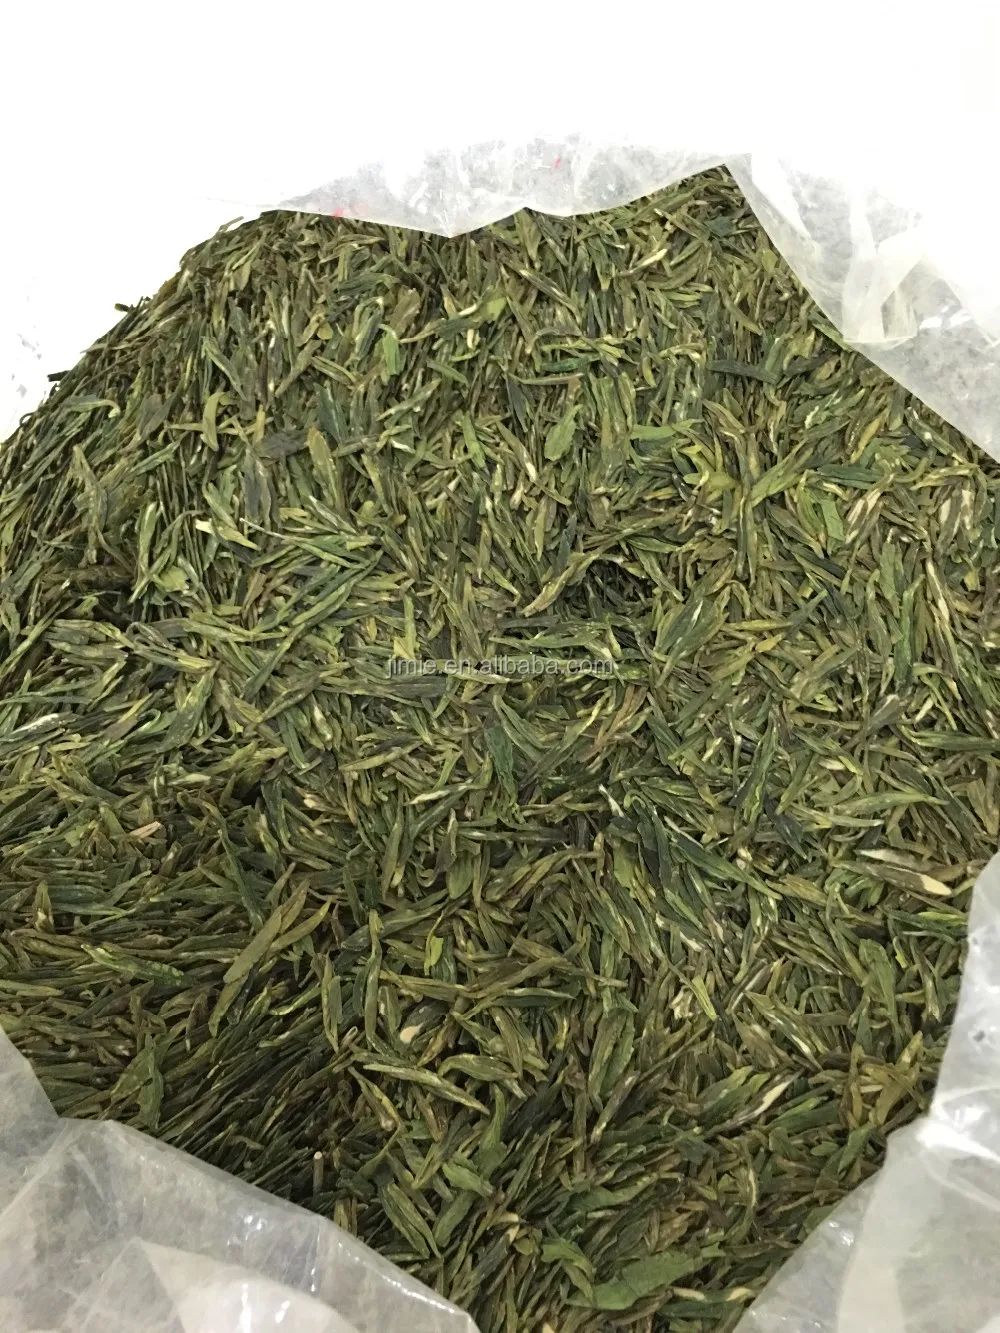 メイド イン チャイナ安い価格アリゾナ緑茶 Buy アリゾナ緑茶 Product On Alibaba Com